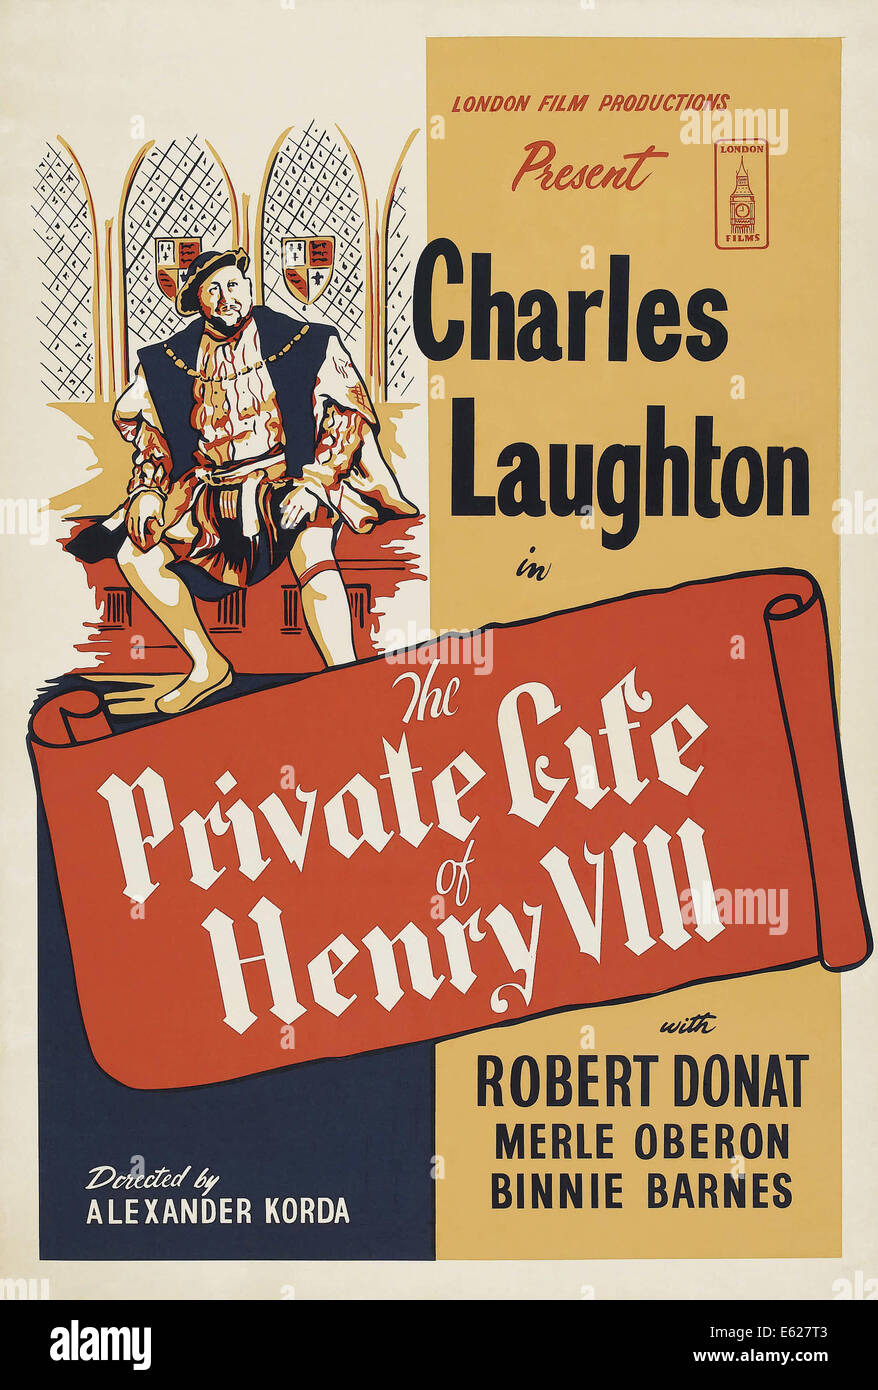 La VIE PRIVÉE D'HENRY VIII - avec Charles Laughton - Affiche - film réalisé par Alexander Korda - United Artists 1933 Banque D'Images